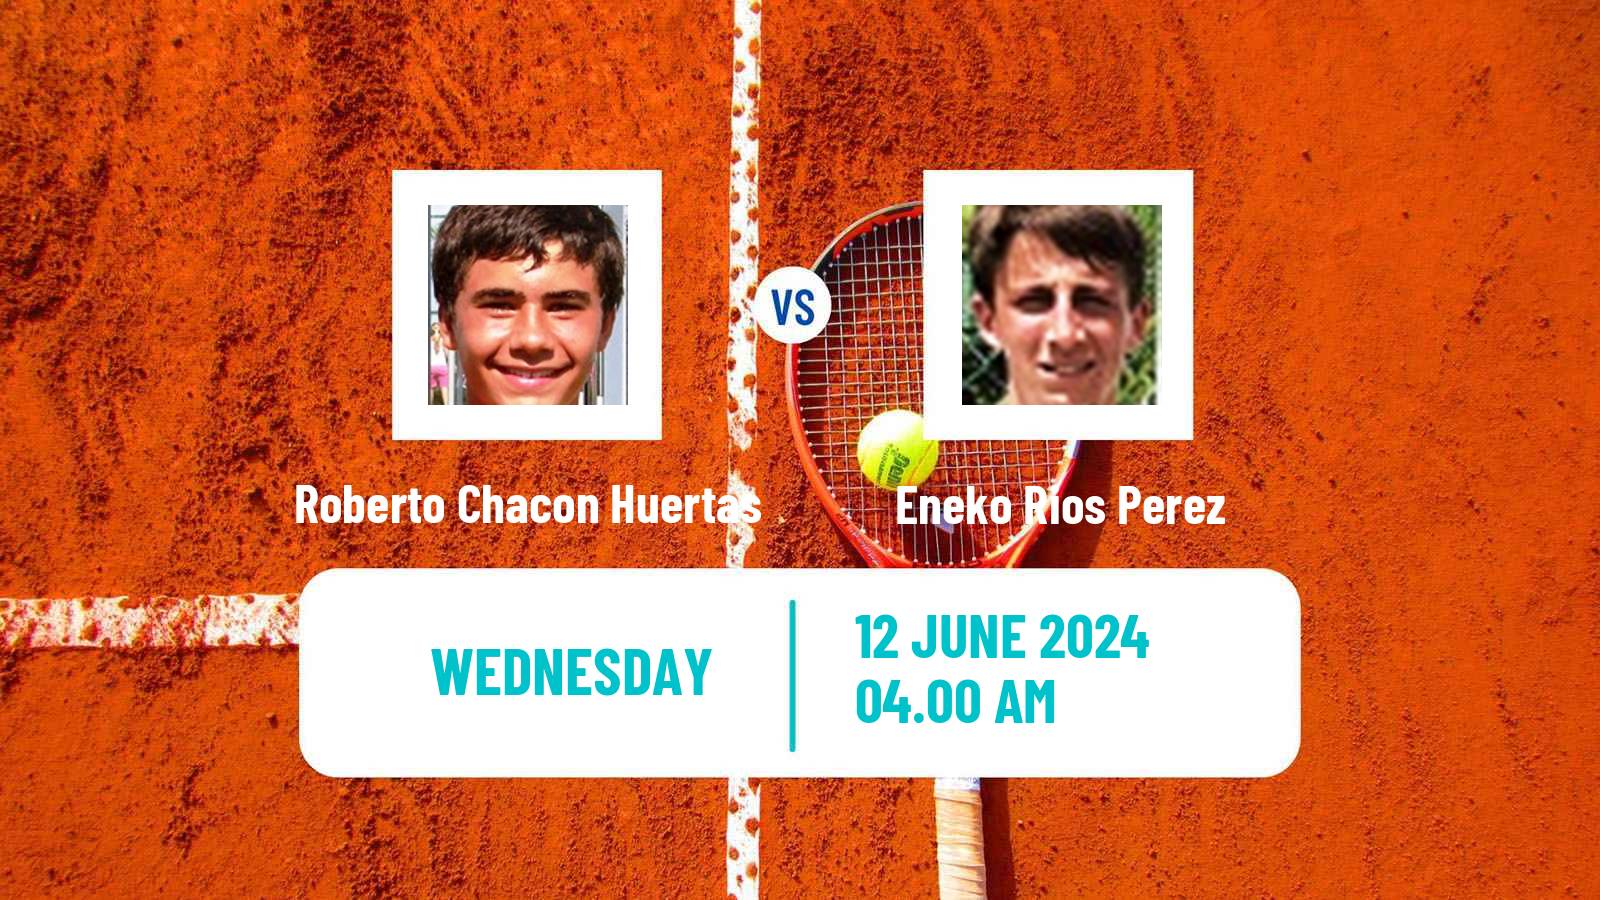 Tennis ITF M25 Martos Men Roberto Chacon Huertas - Eneko Rios Perez